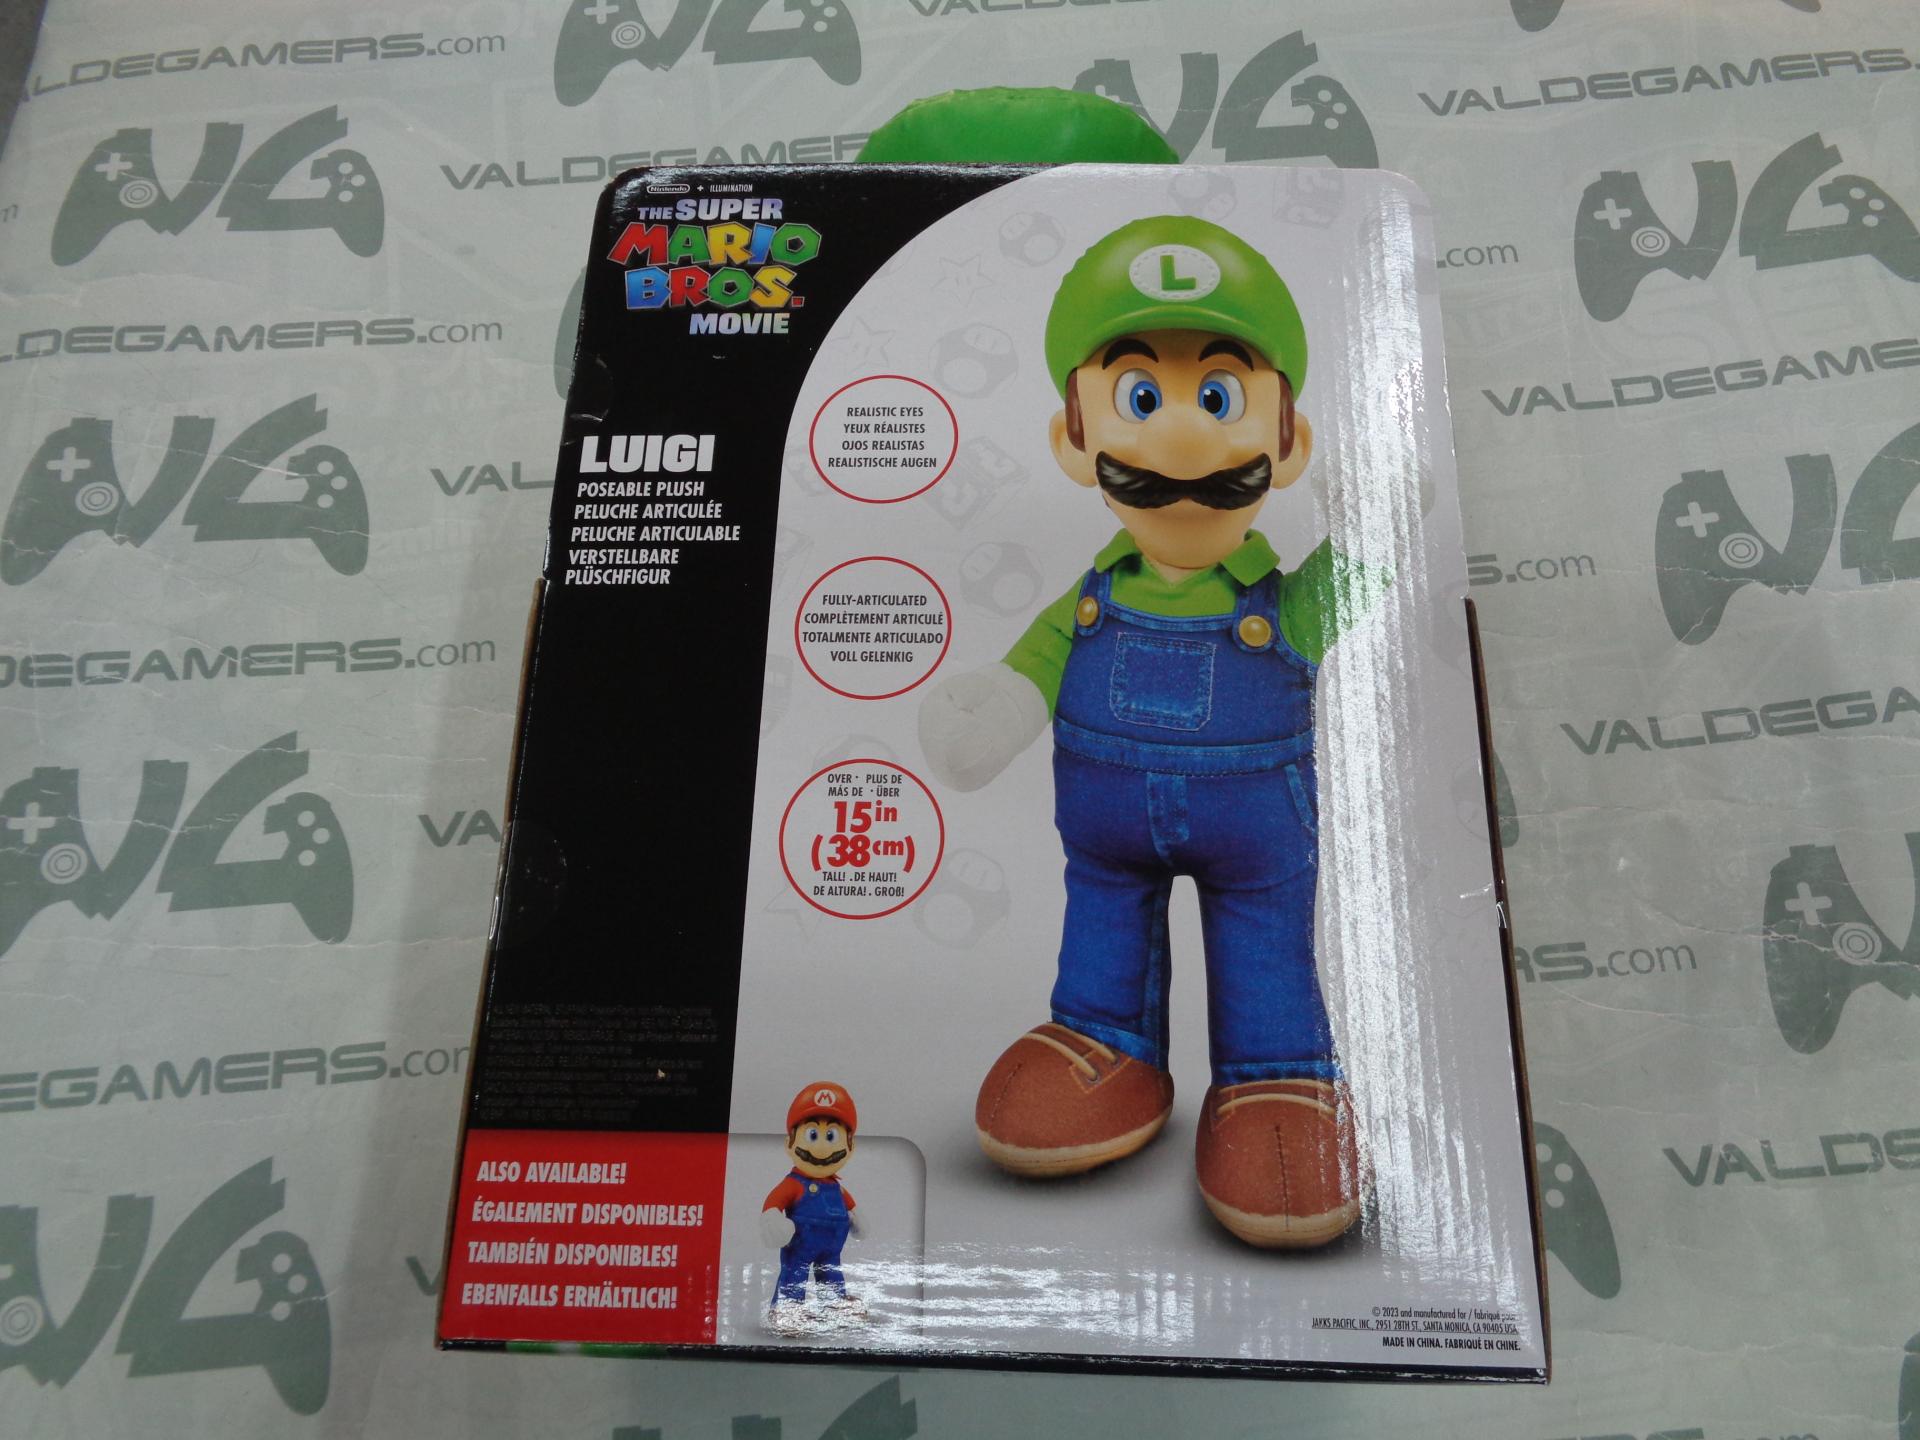 The Super Mario Bros. Movie Peluche Figura Luigi 30 Cm Jakks Pacific